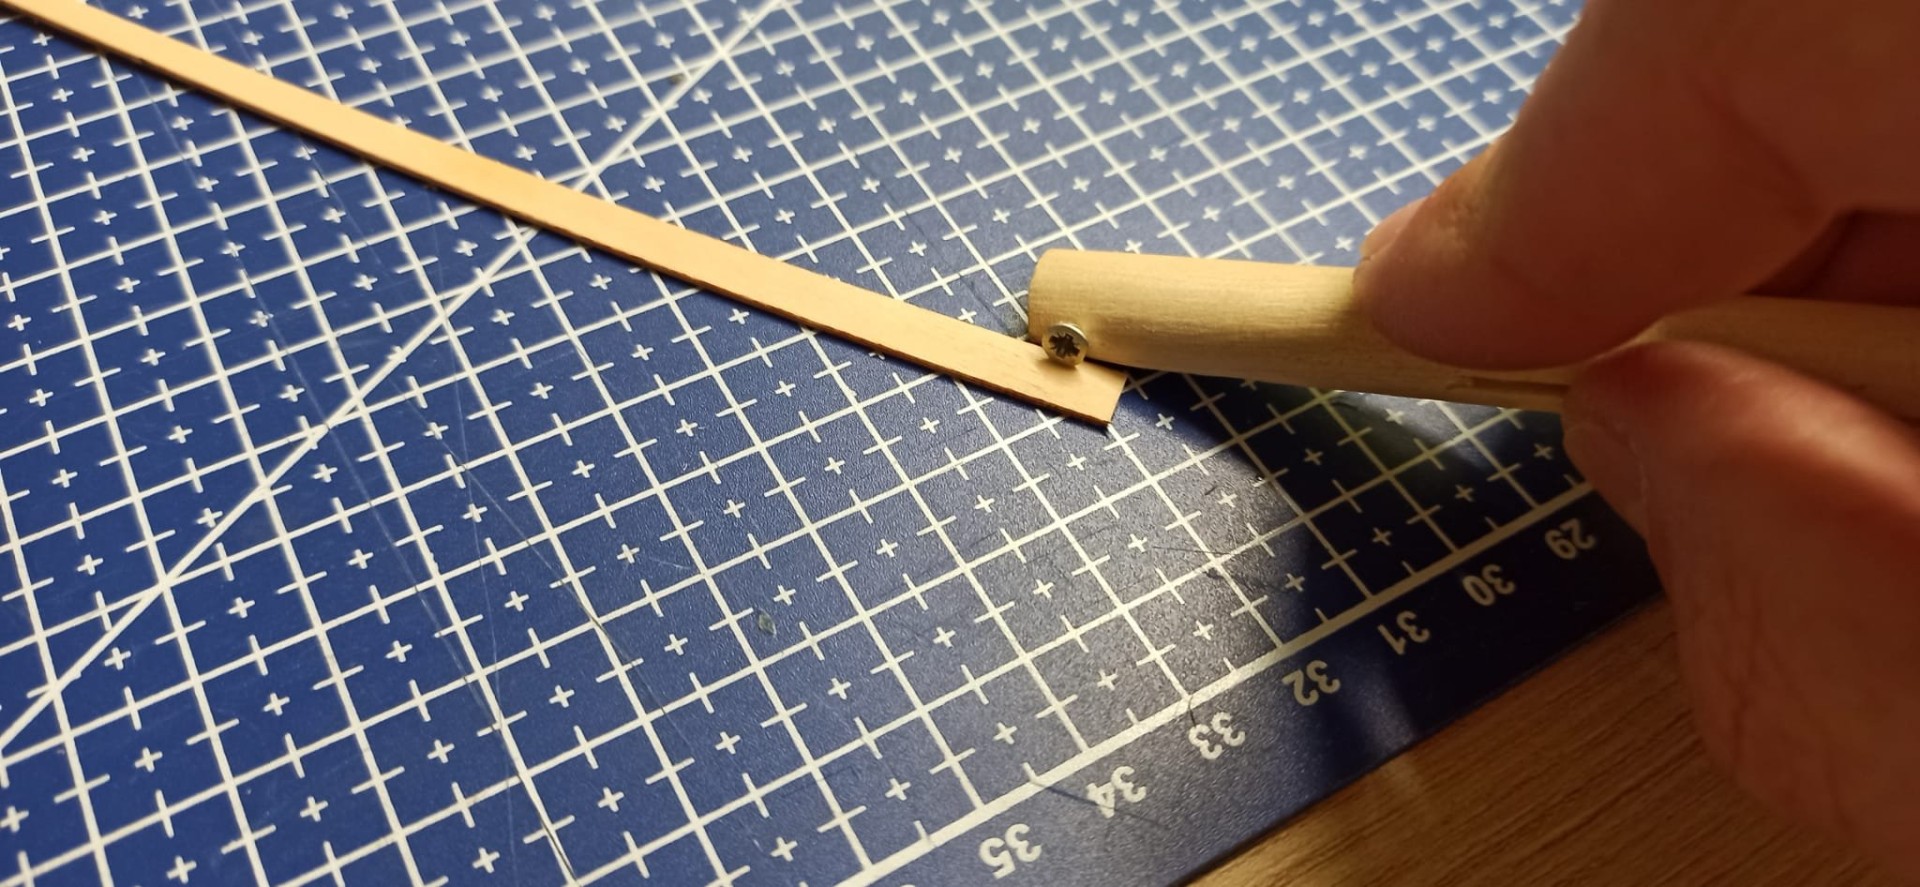 Con esta herramienta de suma precisión y diseño innovador, le hago el rebaje que cada traca lleva a lo largo.